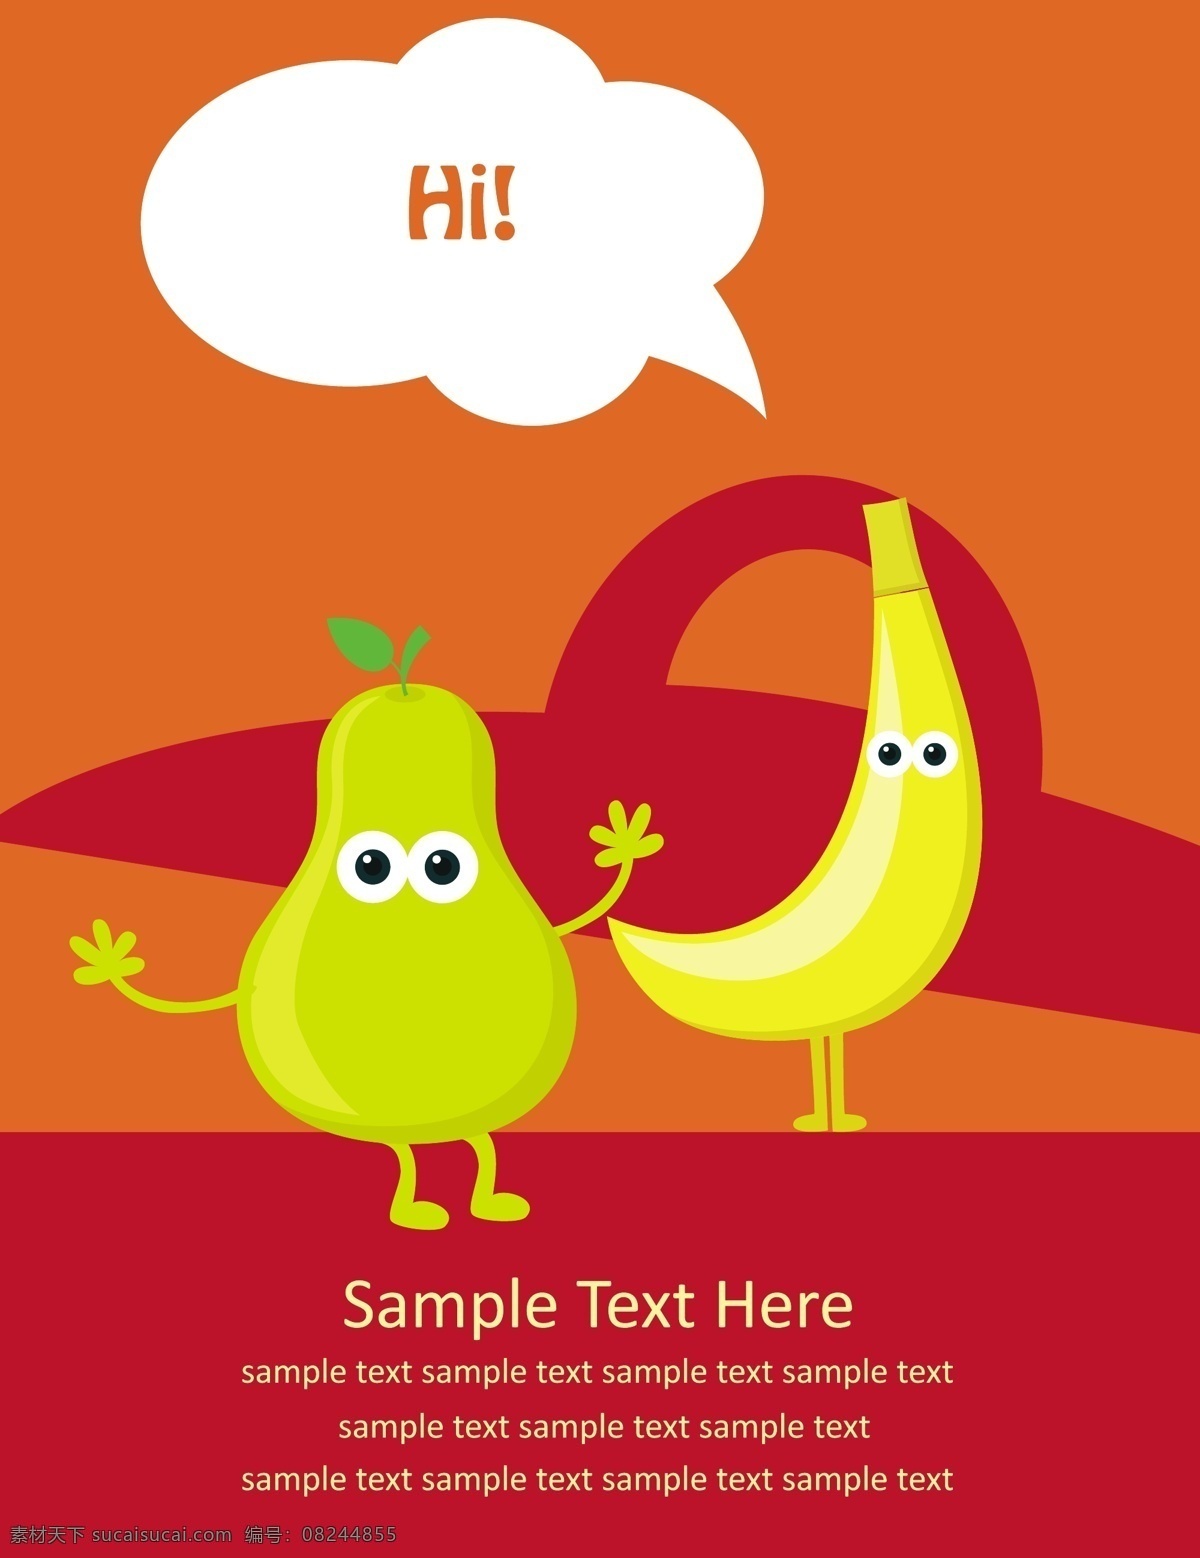 矢量 水果 宣传画册 封面设计 卡通形象 梨 水果蔬菜 香蕉 果蔬 宣传册 矢量图